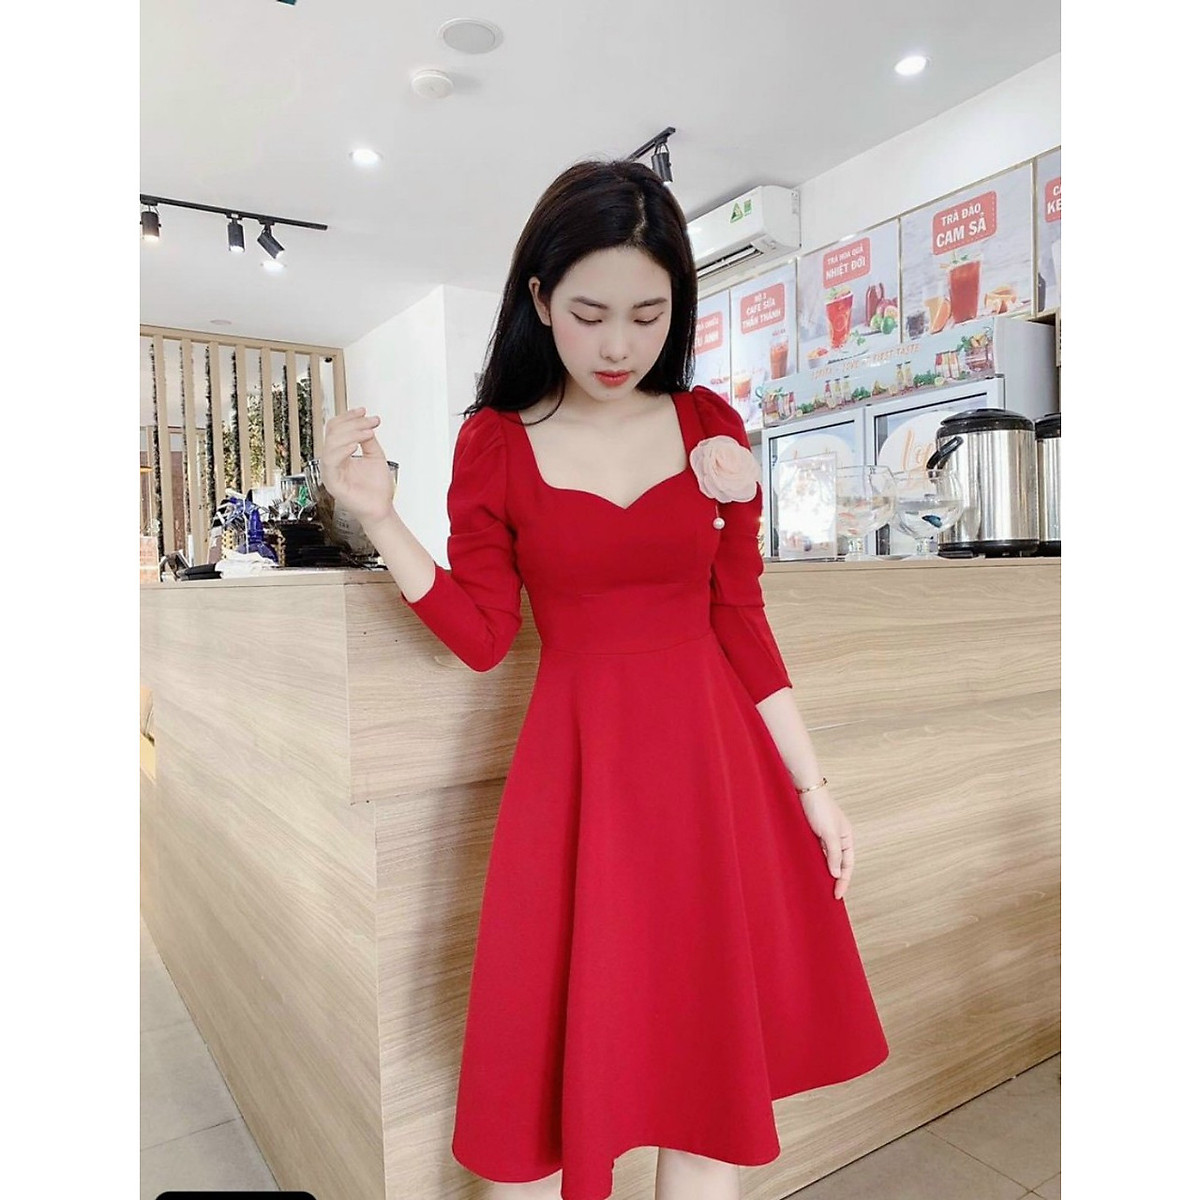 Đầm đỏ tay phồng xòe vải cotton mỹ hàng nhập  Quần Áo Xưởng May ANN